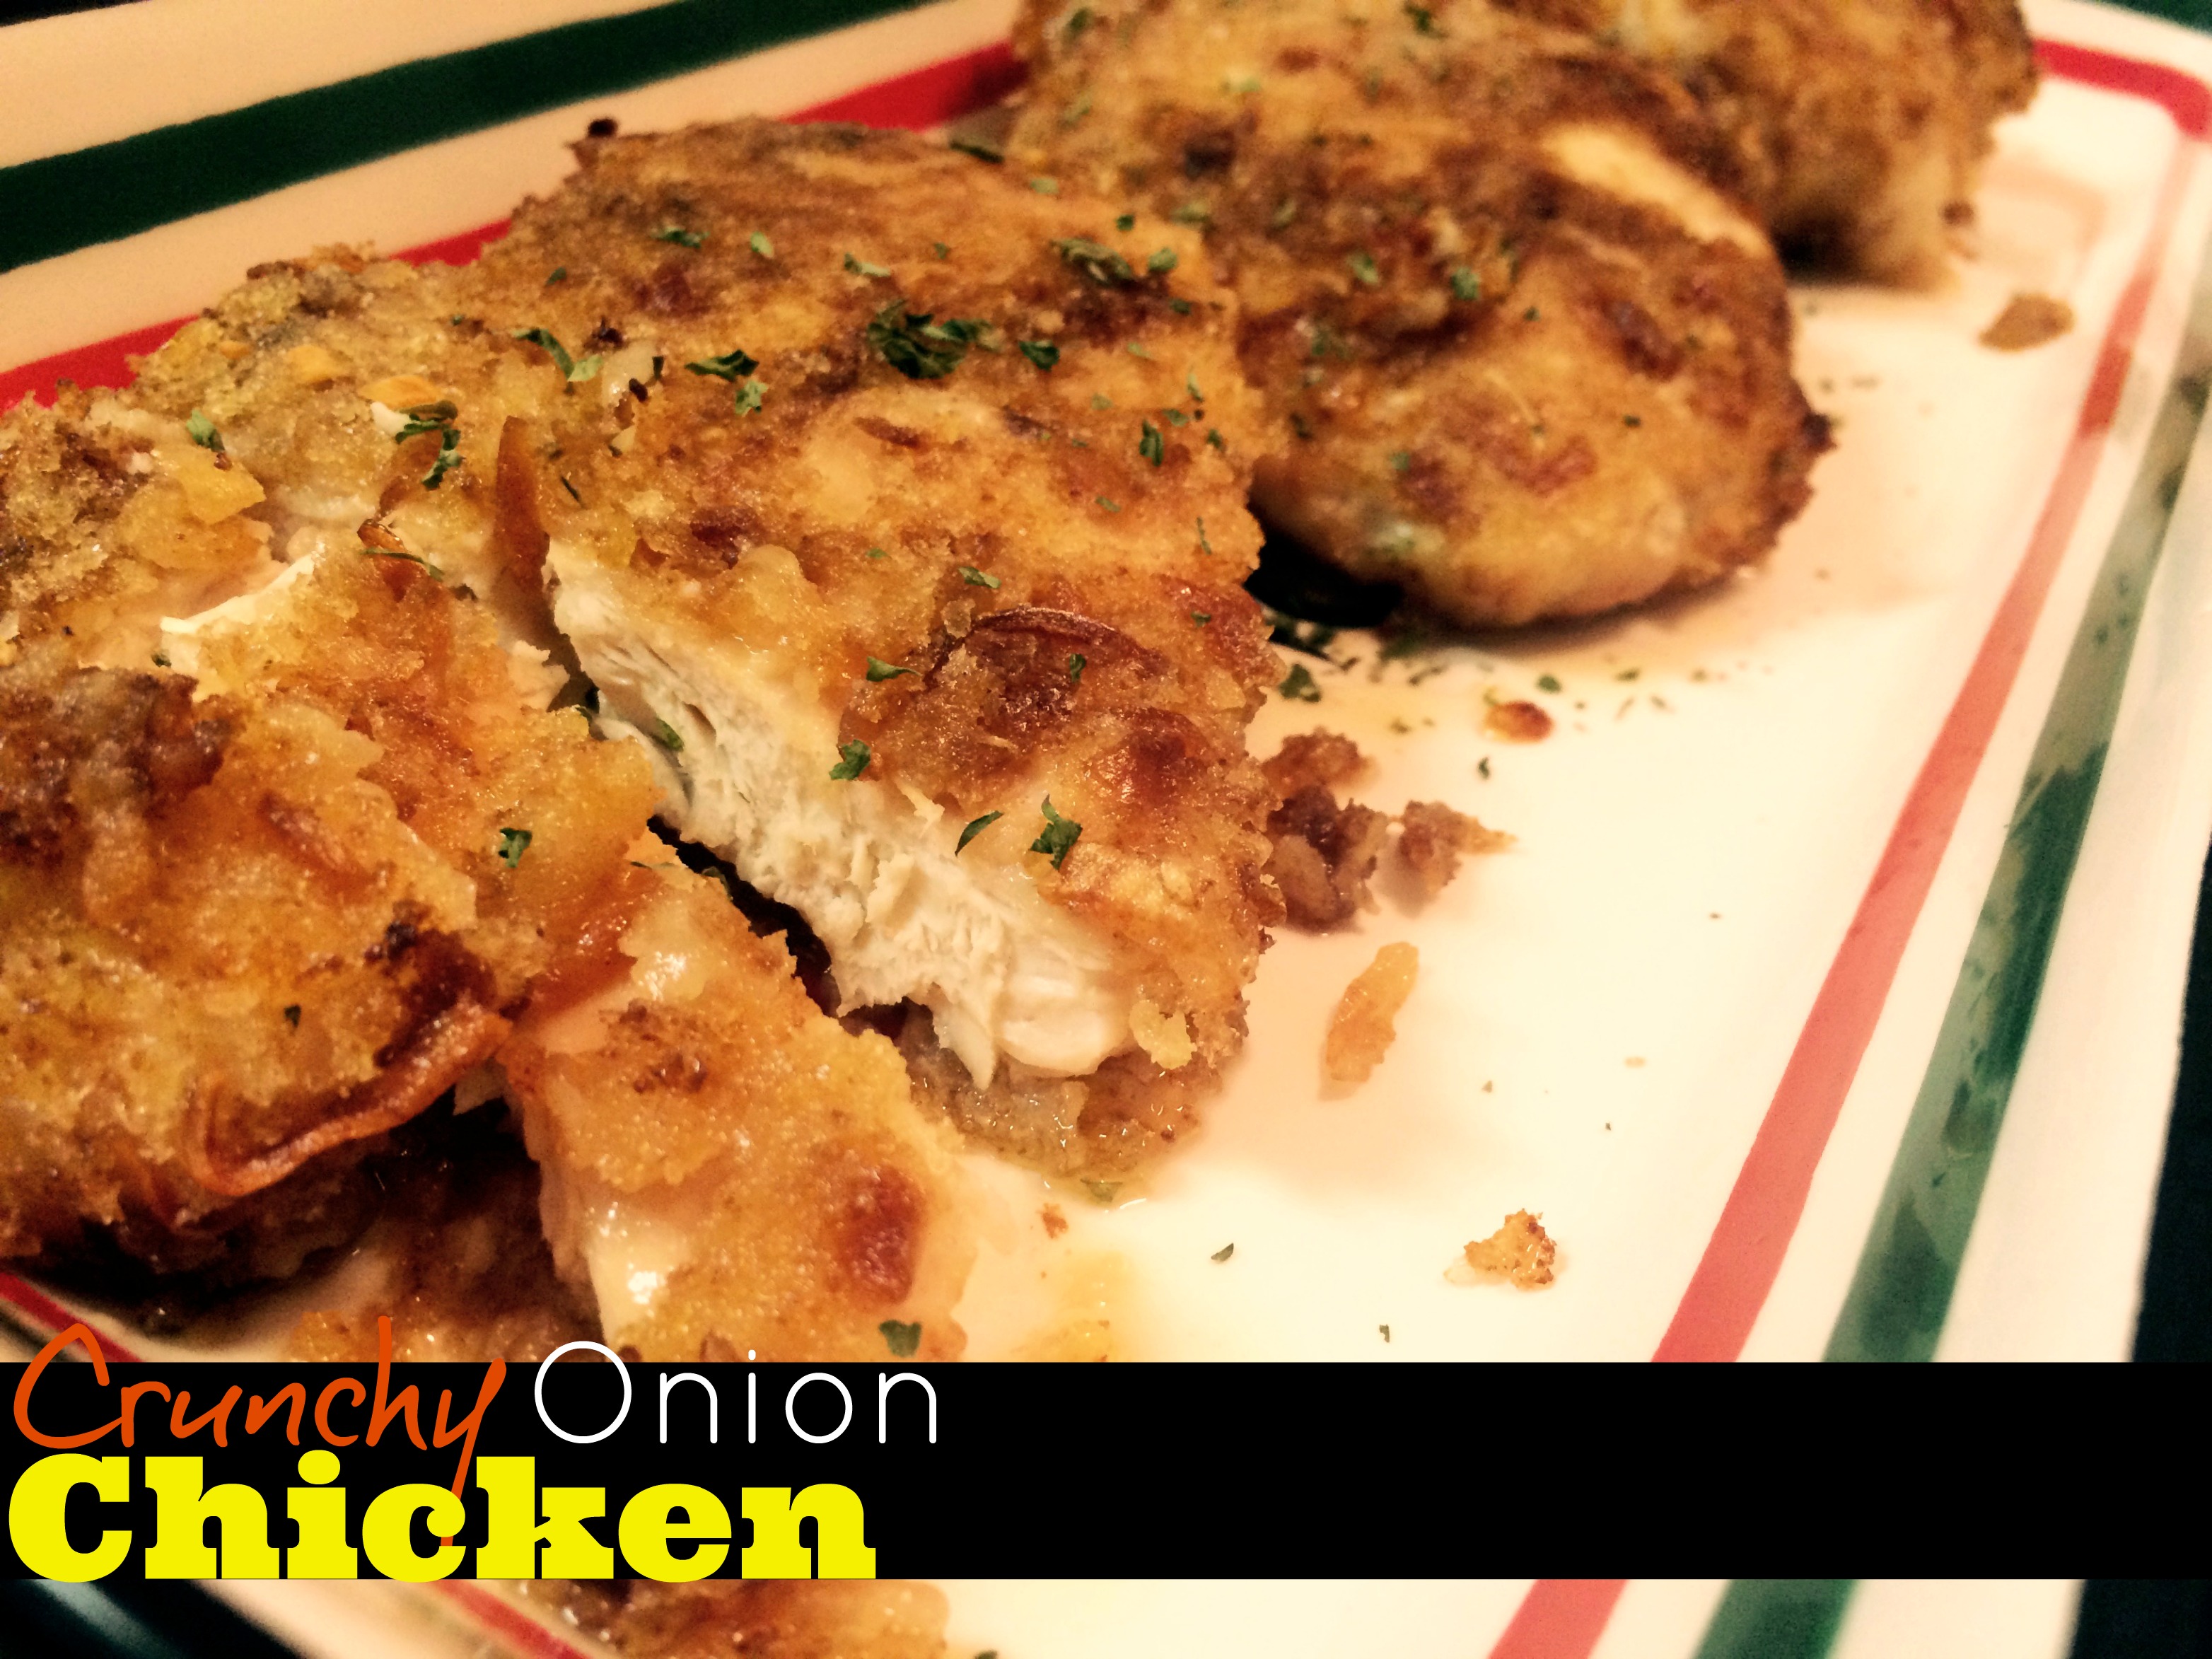 Crunchy Onion Chicken